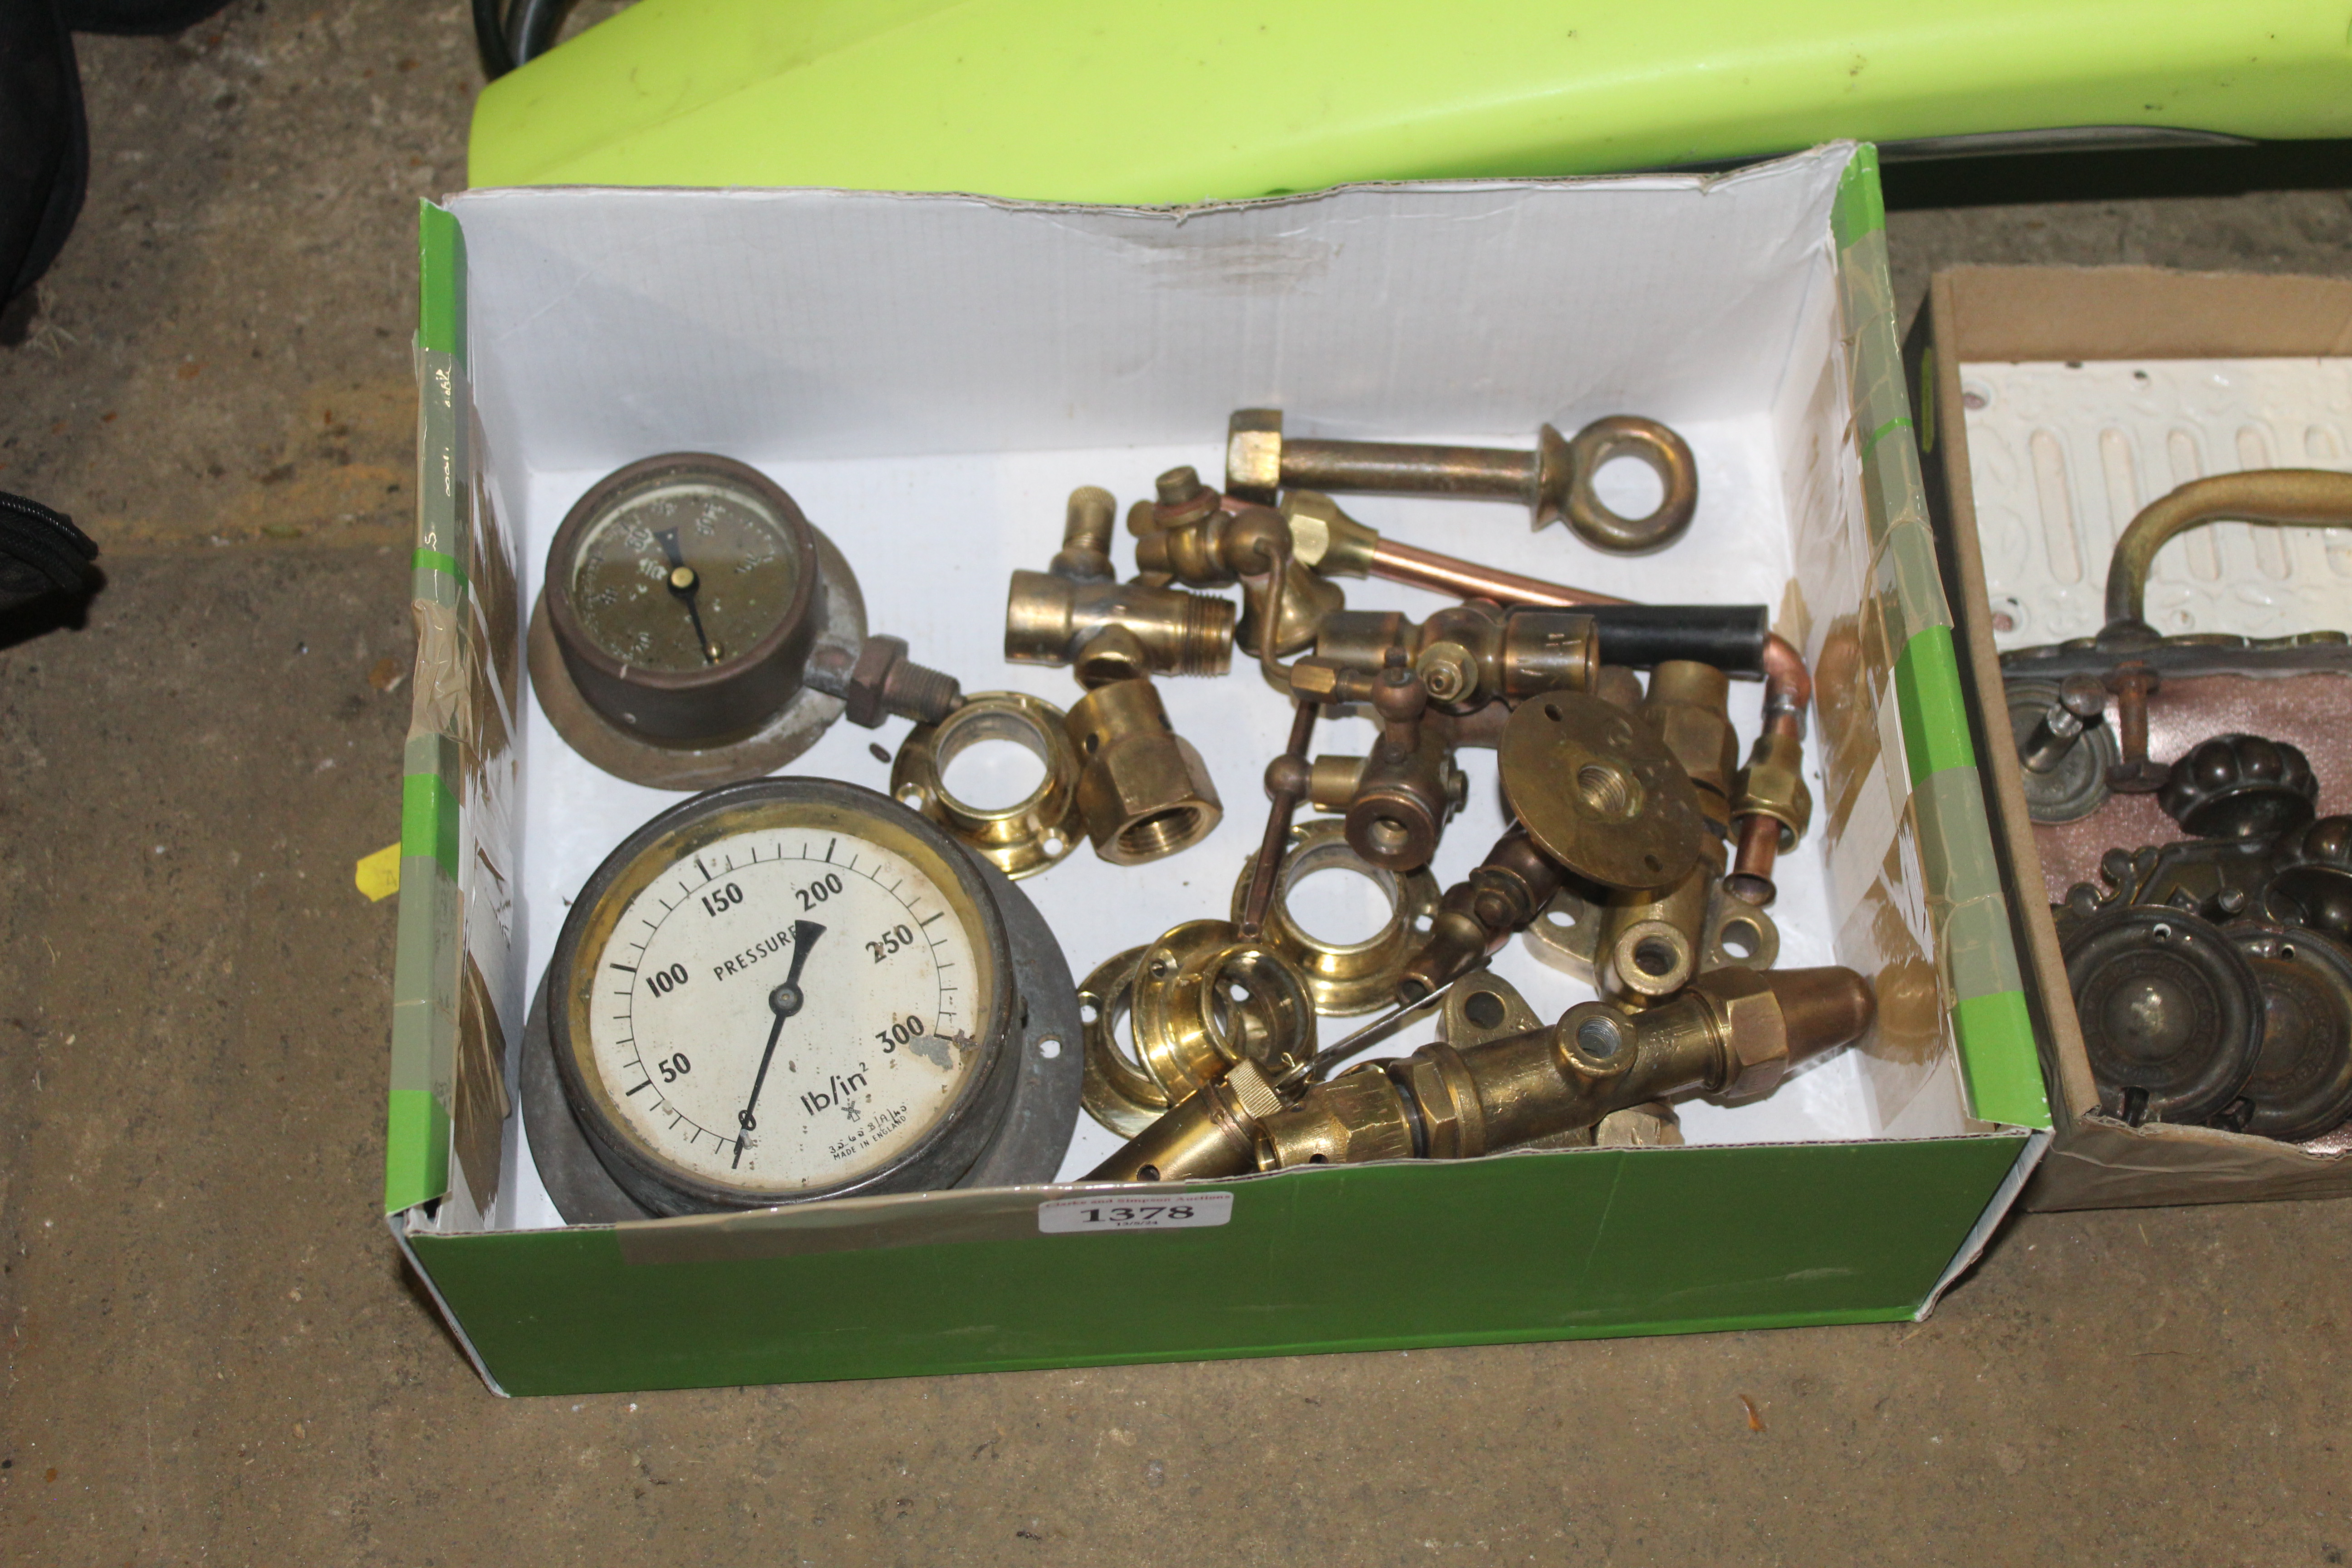 A box containing a pressure gauge, a quantity of v